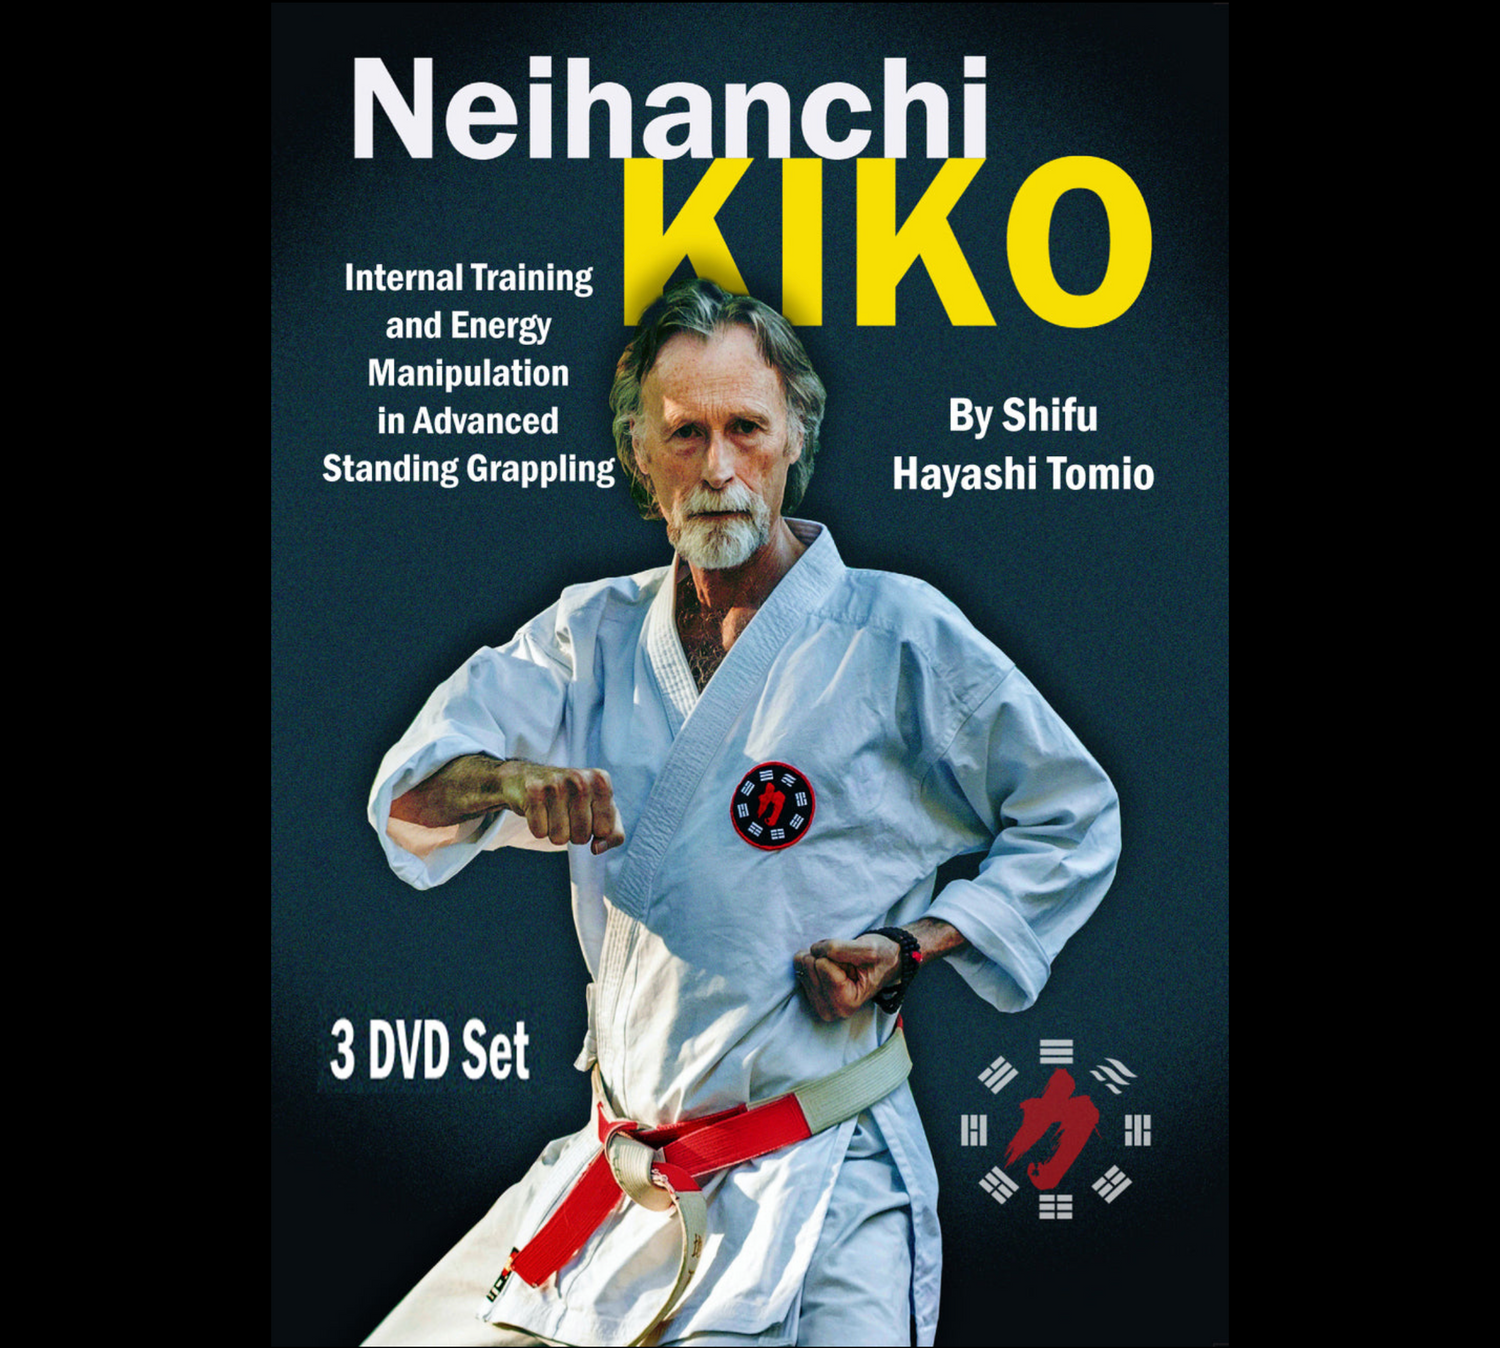 Neihanchi KIKO by Hayashi Tomio (On Demand)